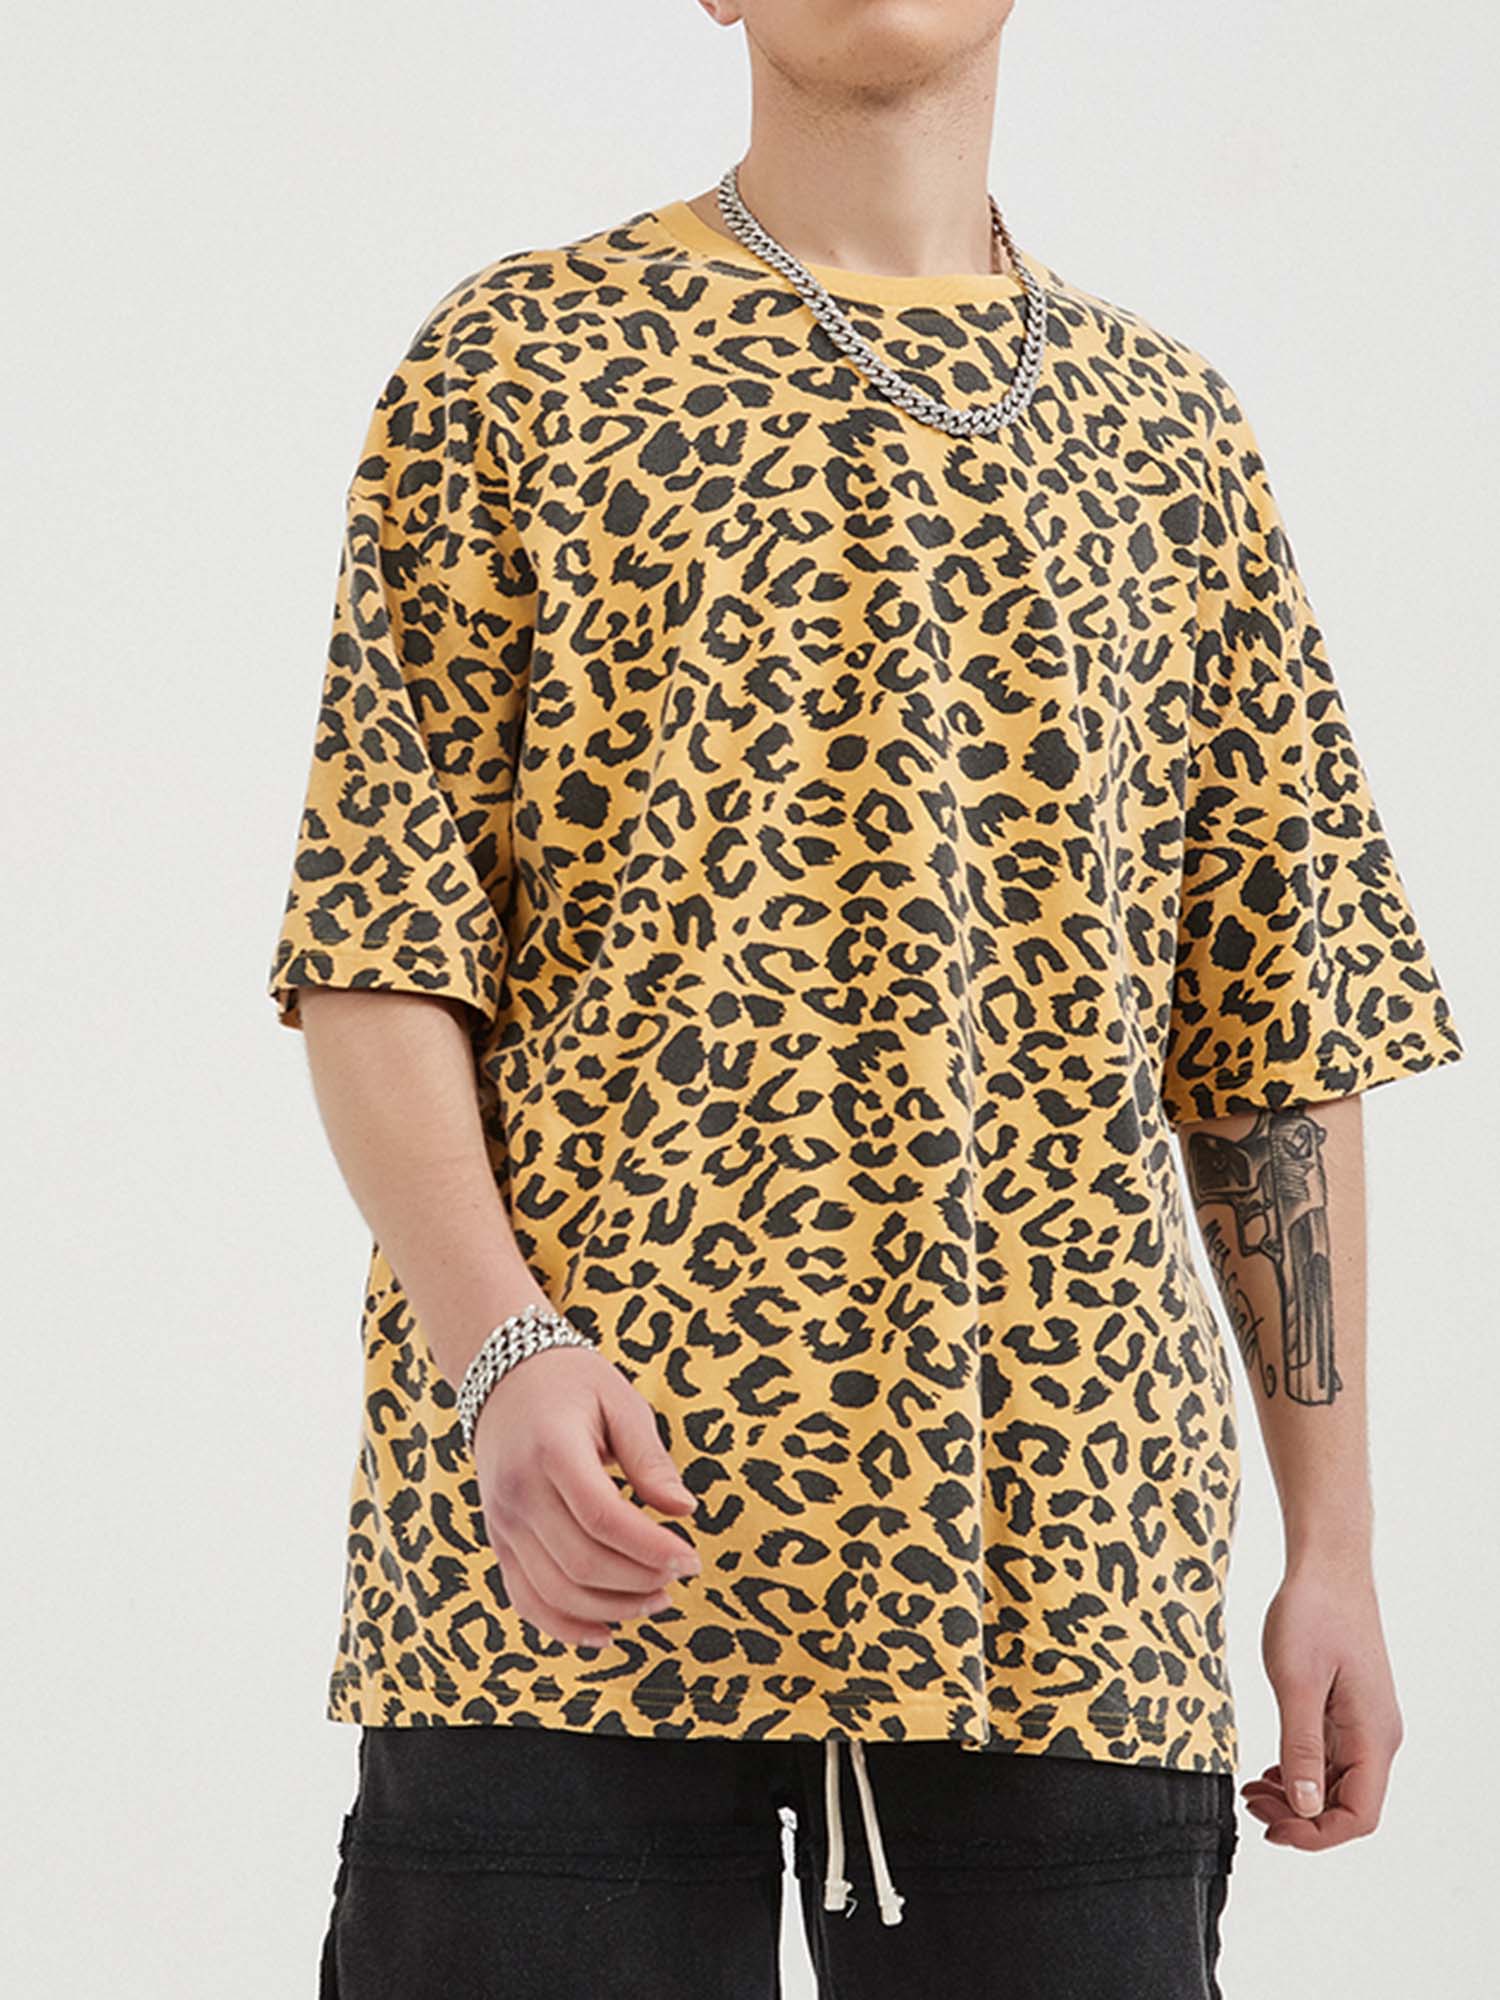 JUSTNOTAG T-shirt à manches courtes 100% coton imprimé léopard jaune